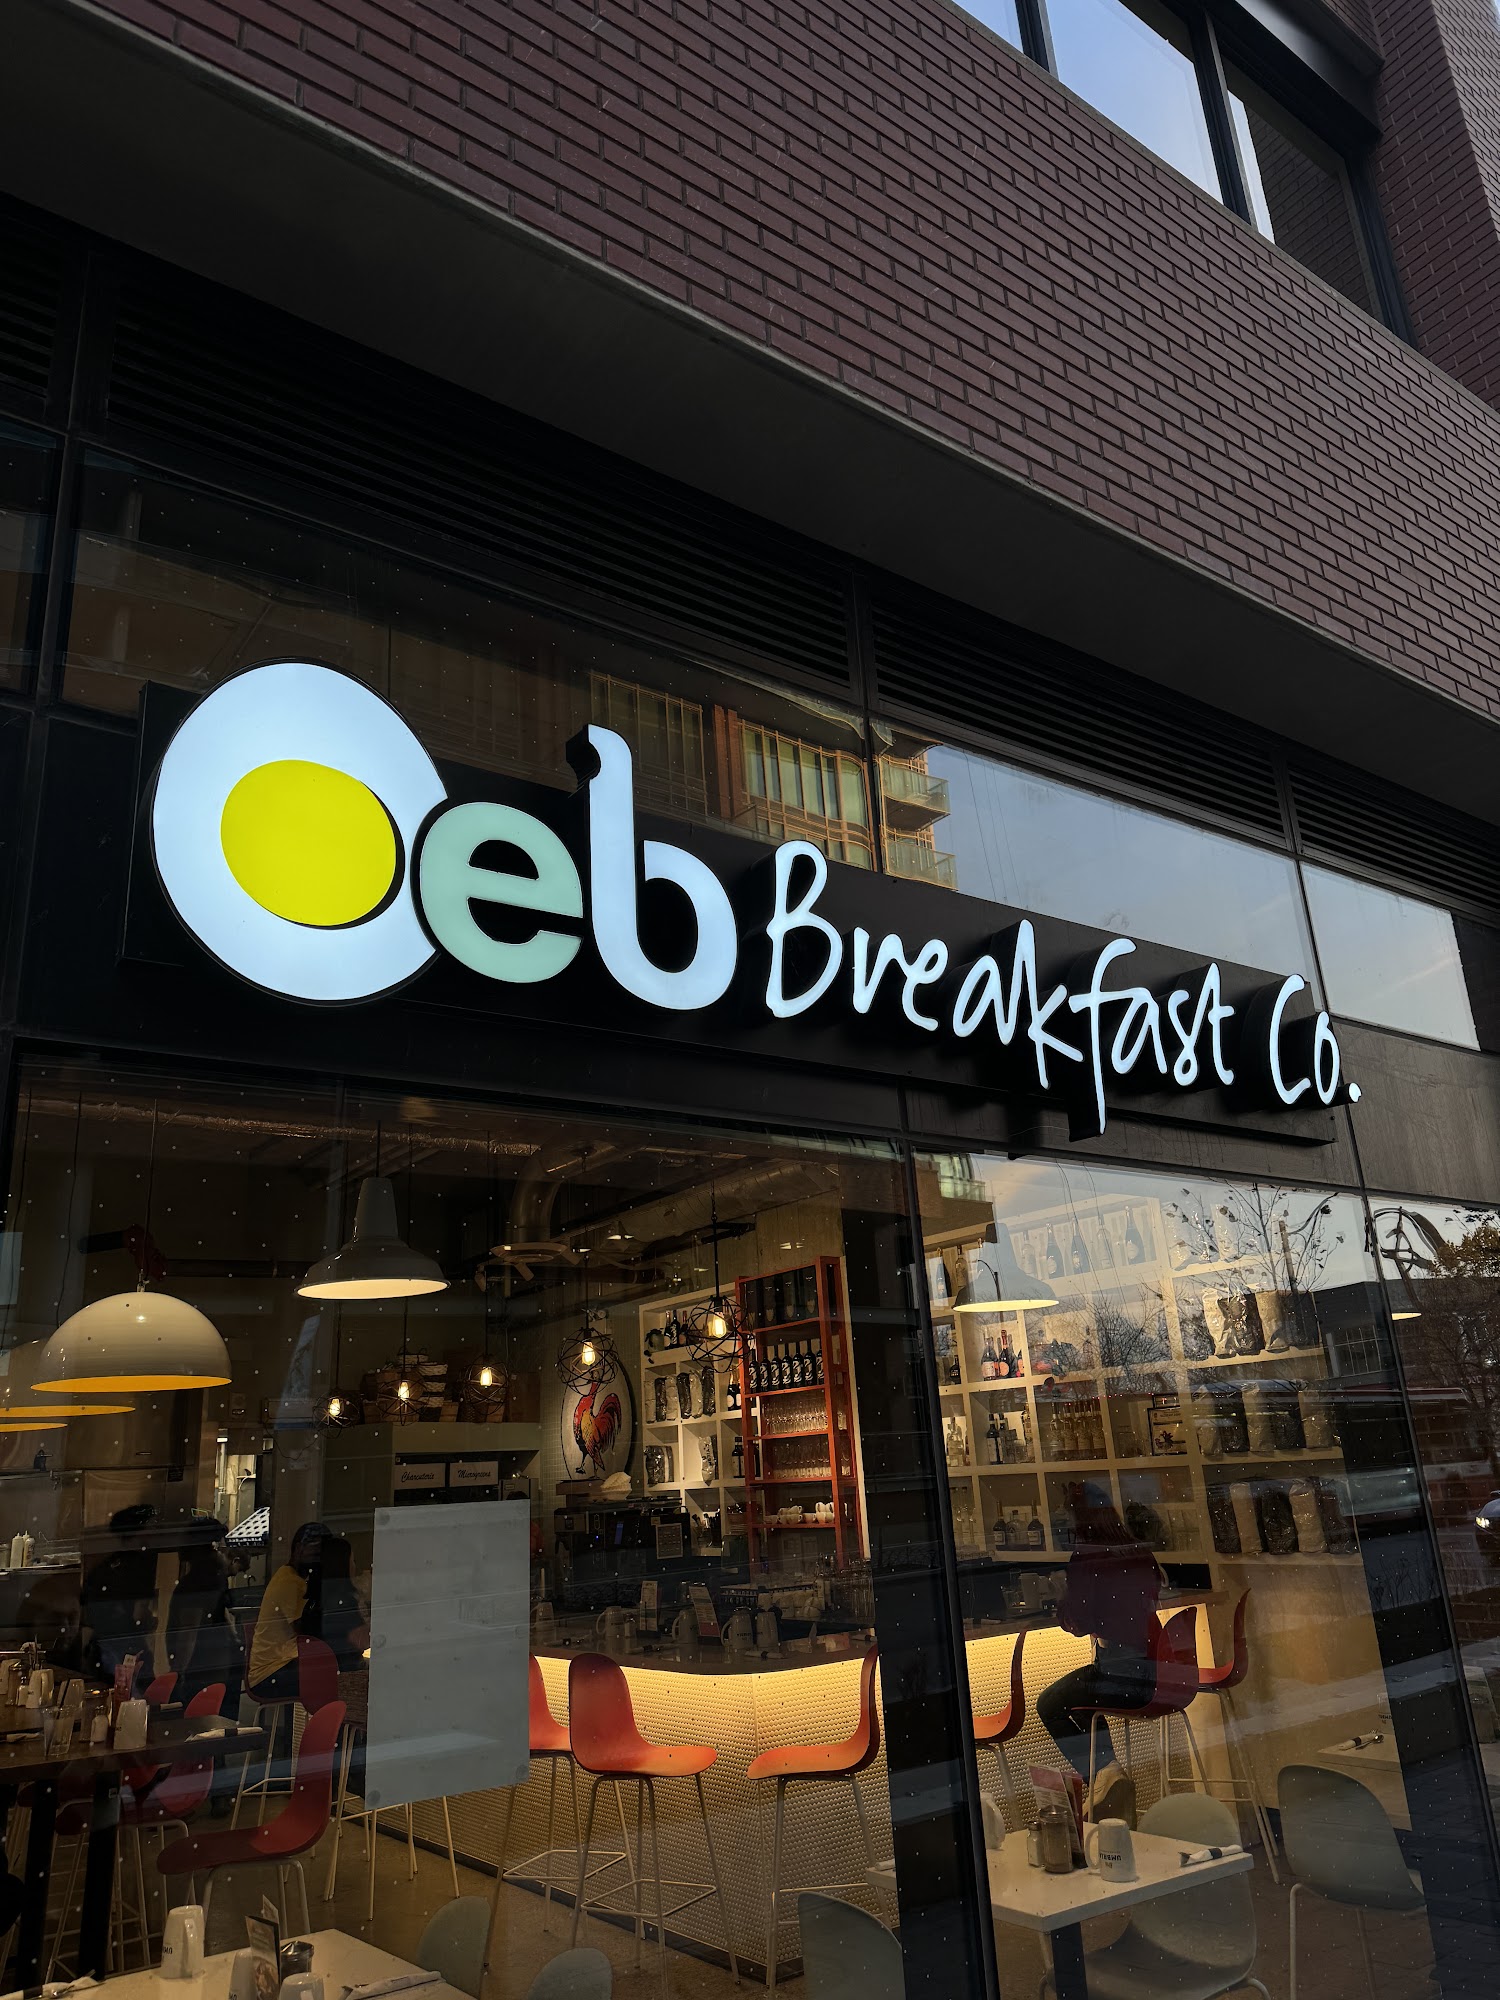 OEB Breakfast Co.